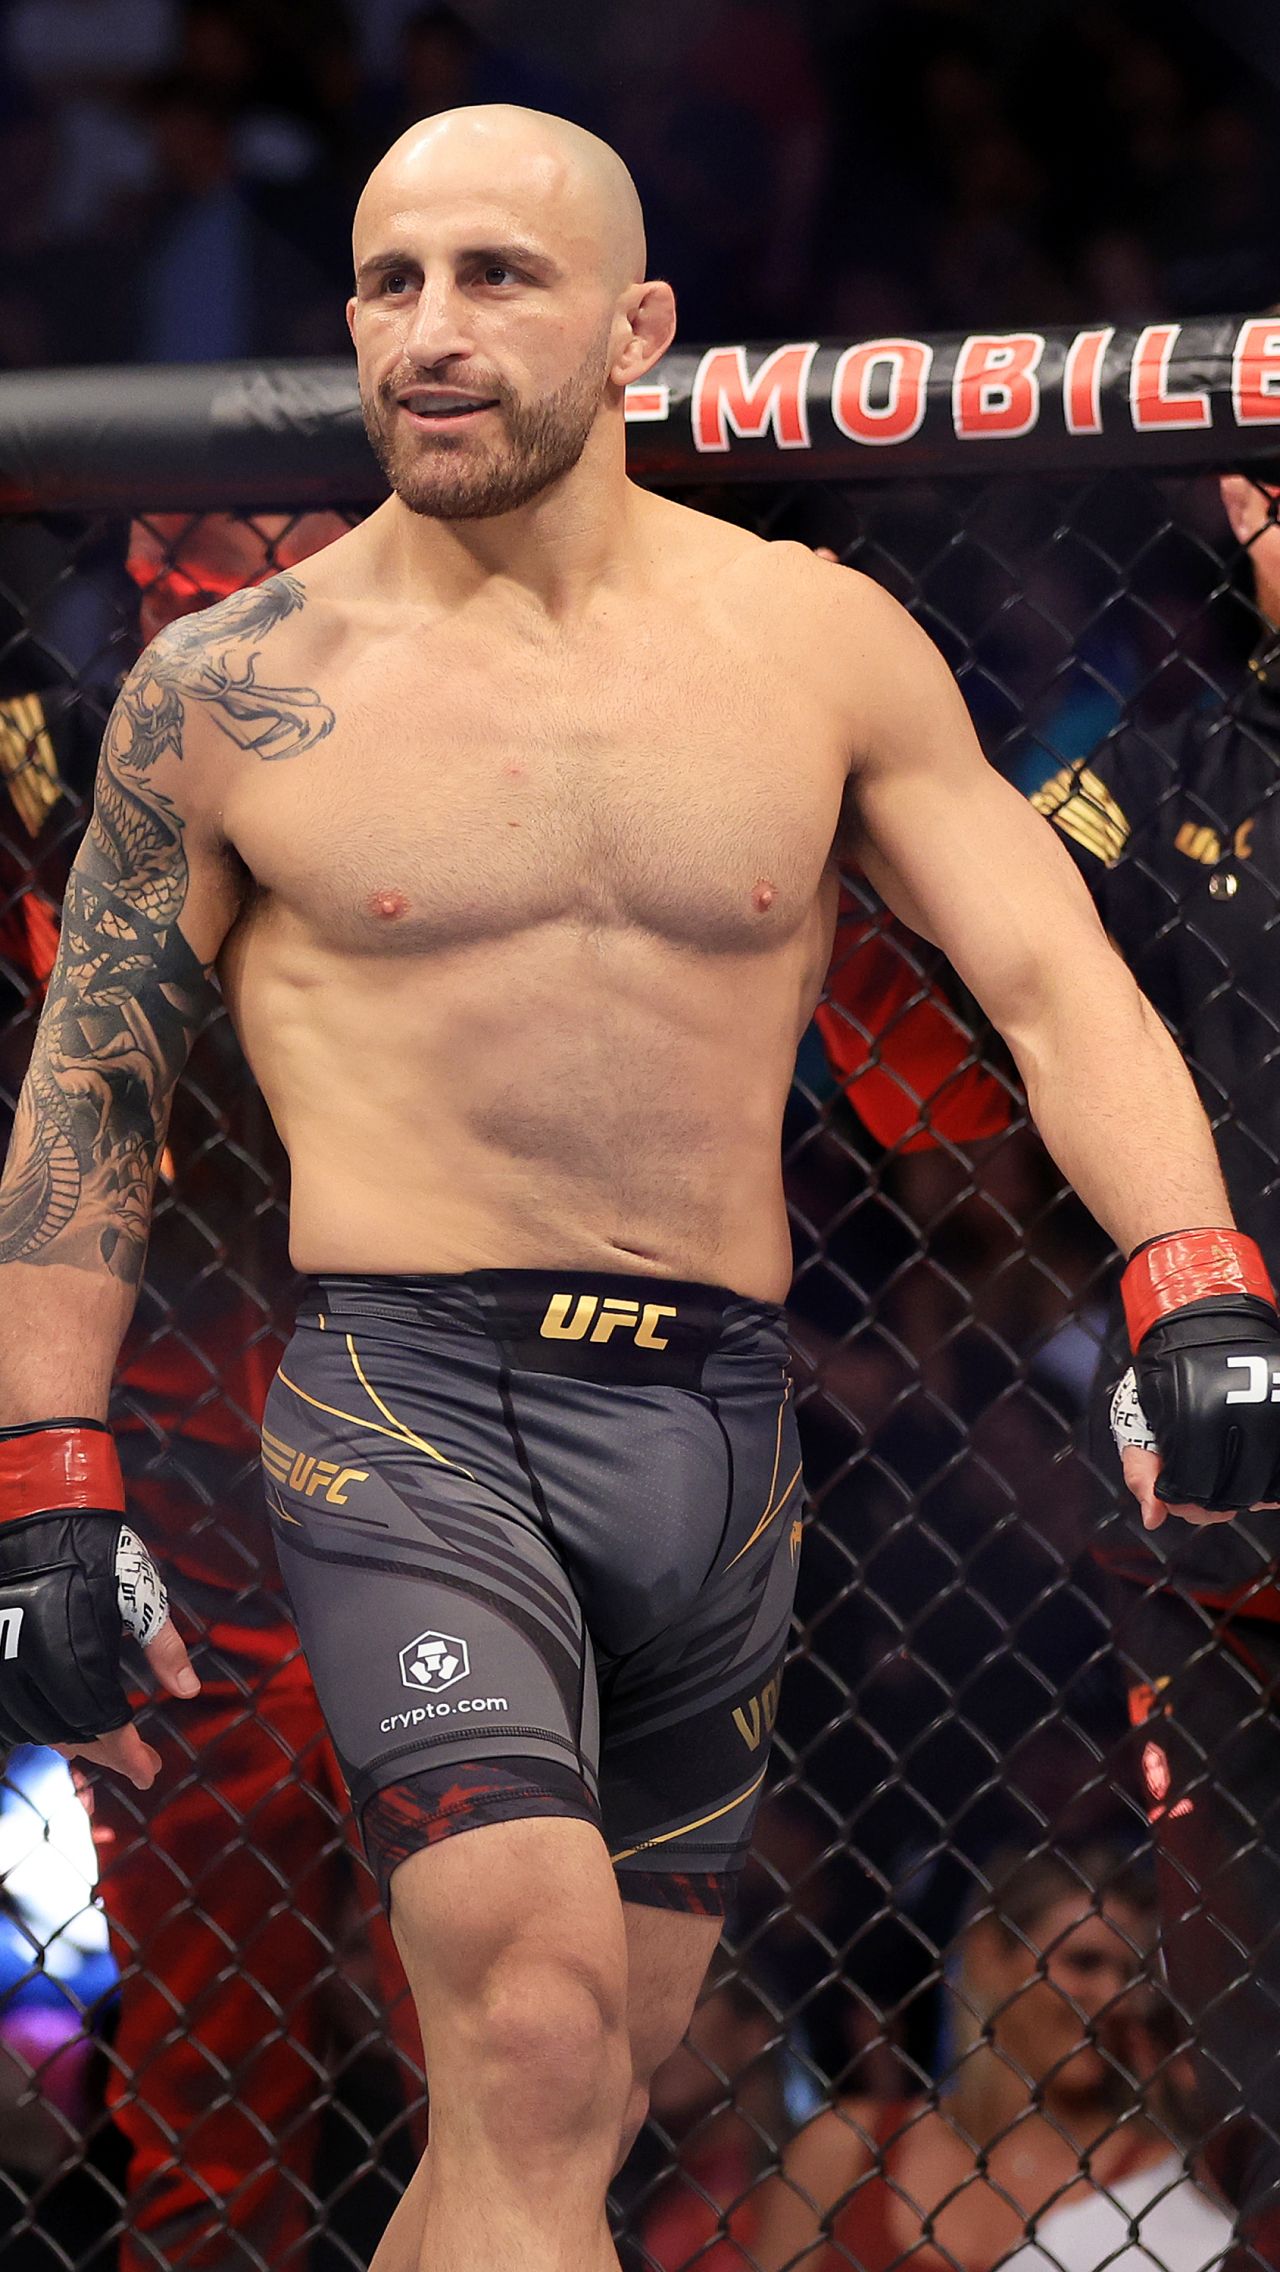 Спортсмен проиграл бой за титул UFC в лёгком весе, но решение судей было неоднозначным. Волкановски проявил мастерство, которое заслуживало пояса.